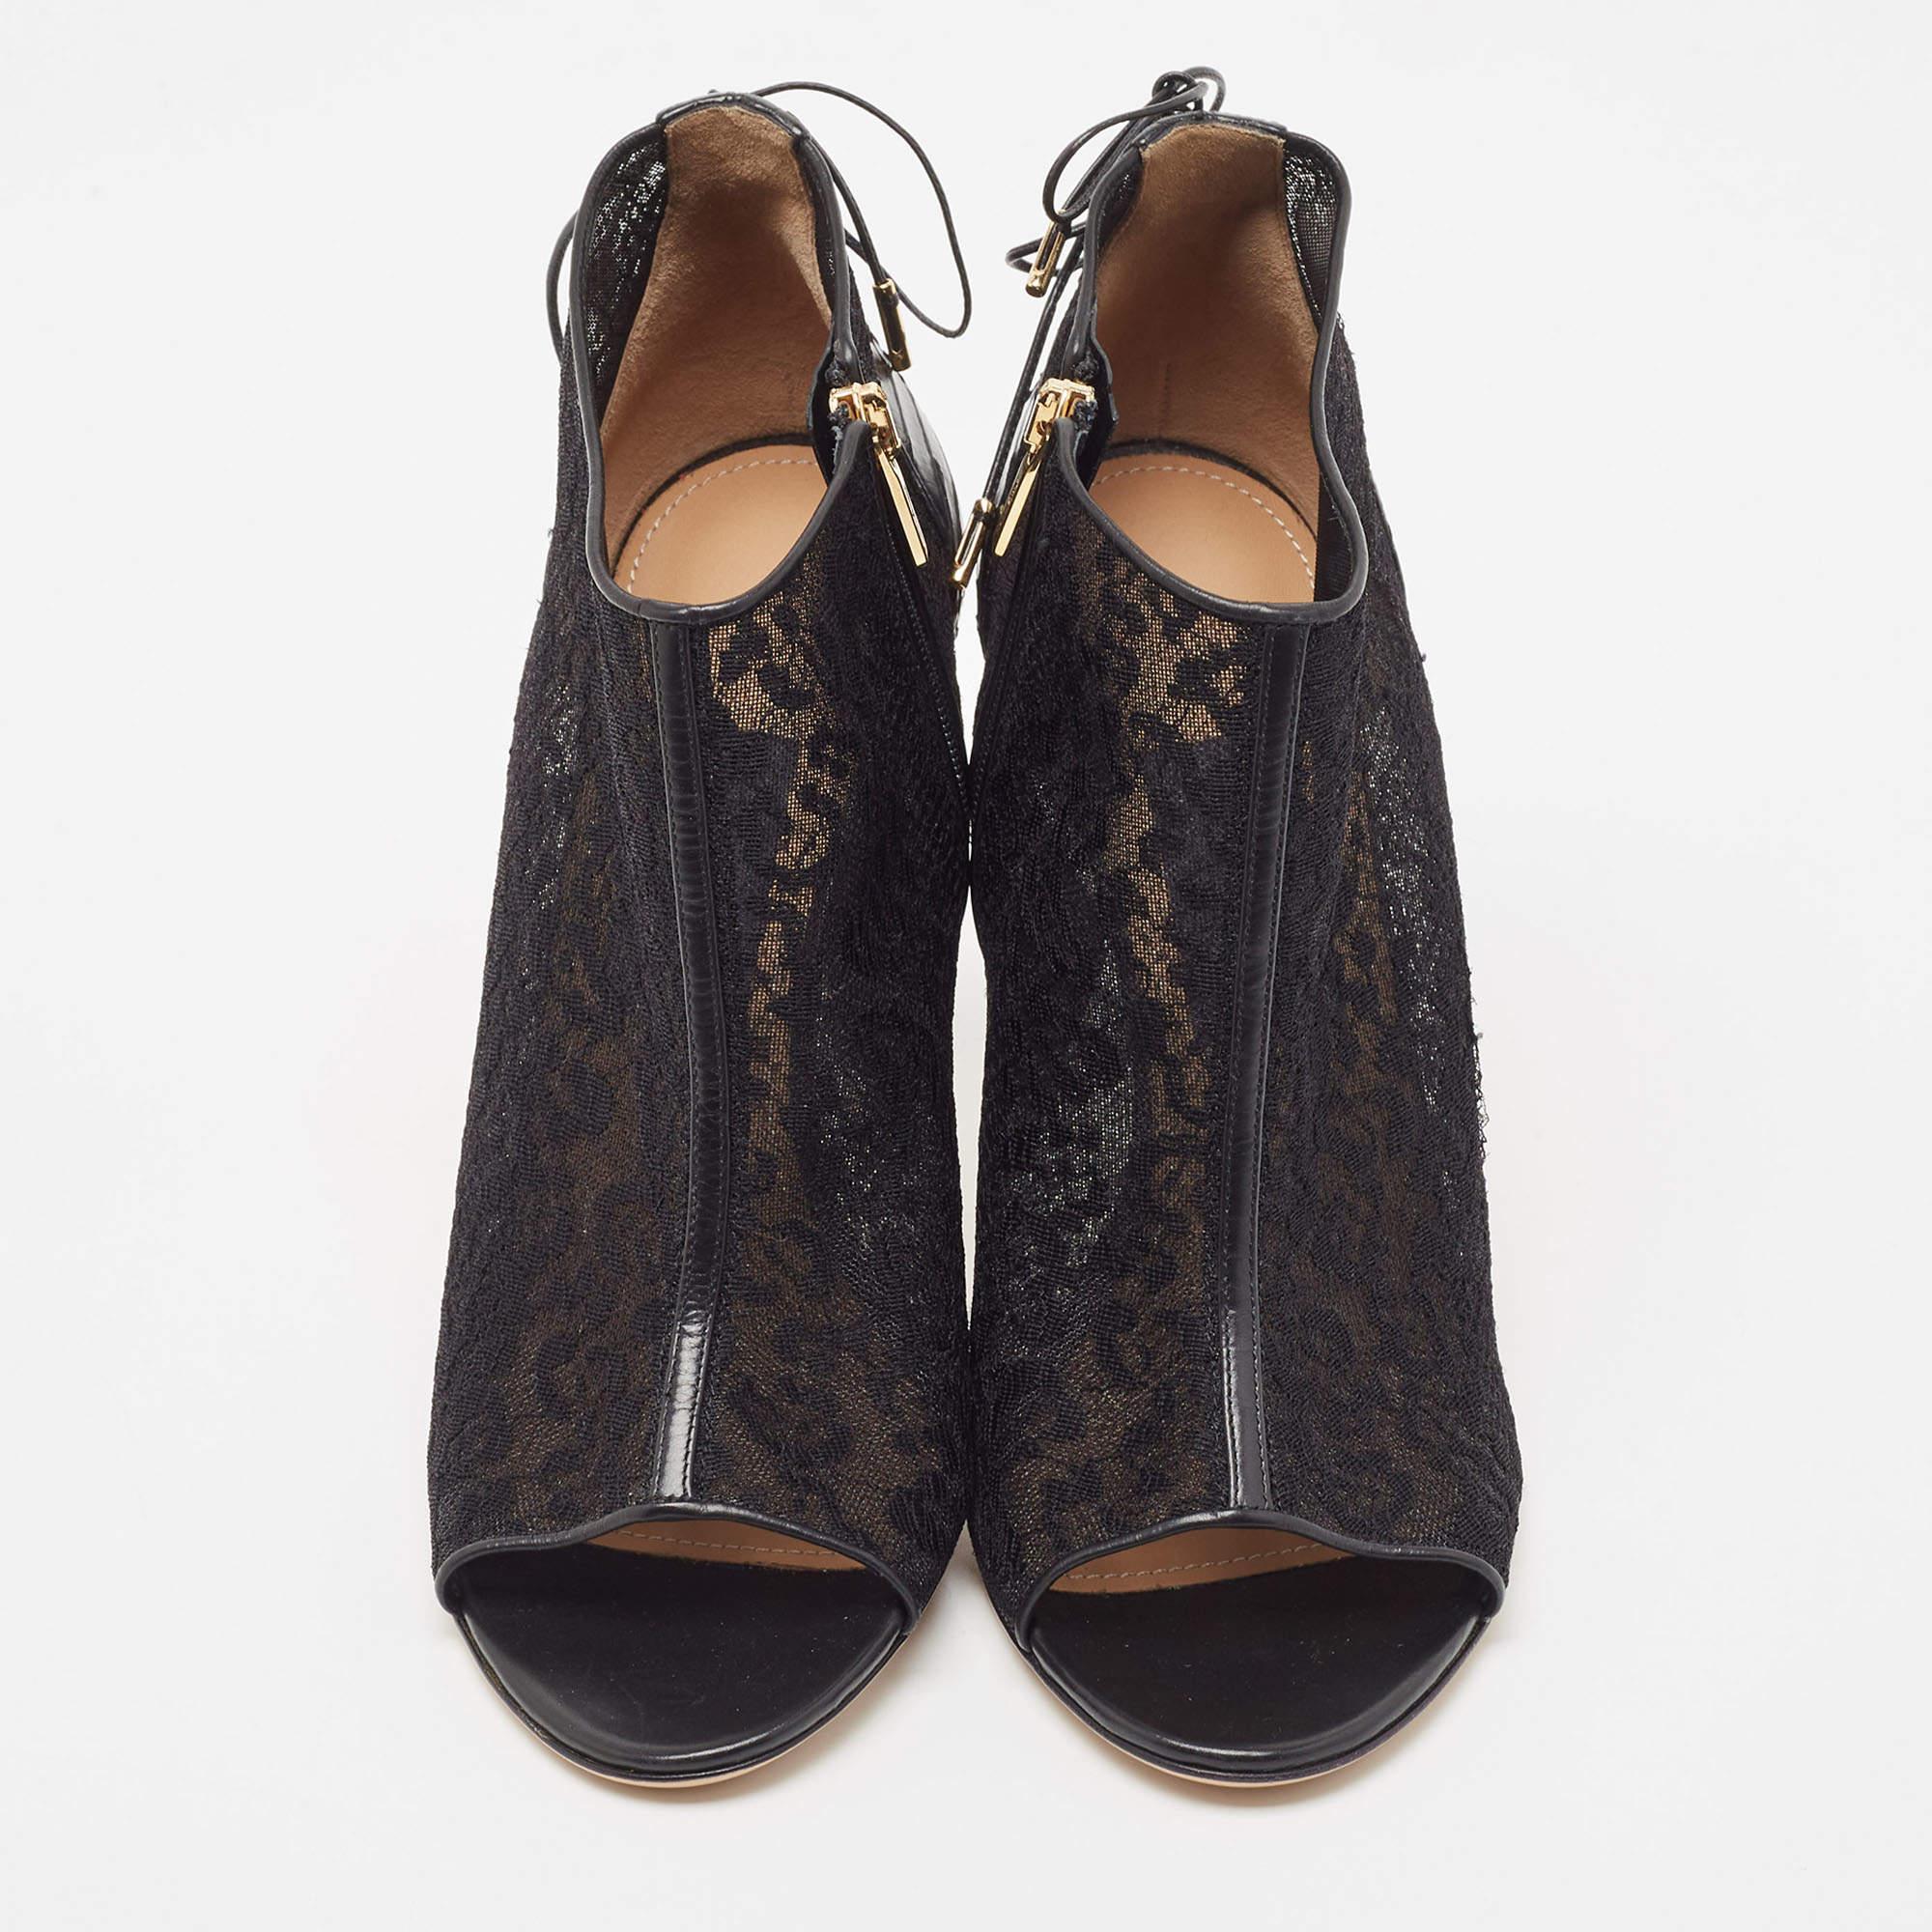 Salvatore Ferragamo Black Lace and Python Peep Toe Ankle Boots Size 39.5 In New Condition For Sale In Dubai, Al Qouz 2